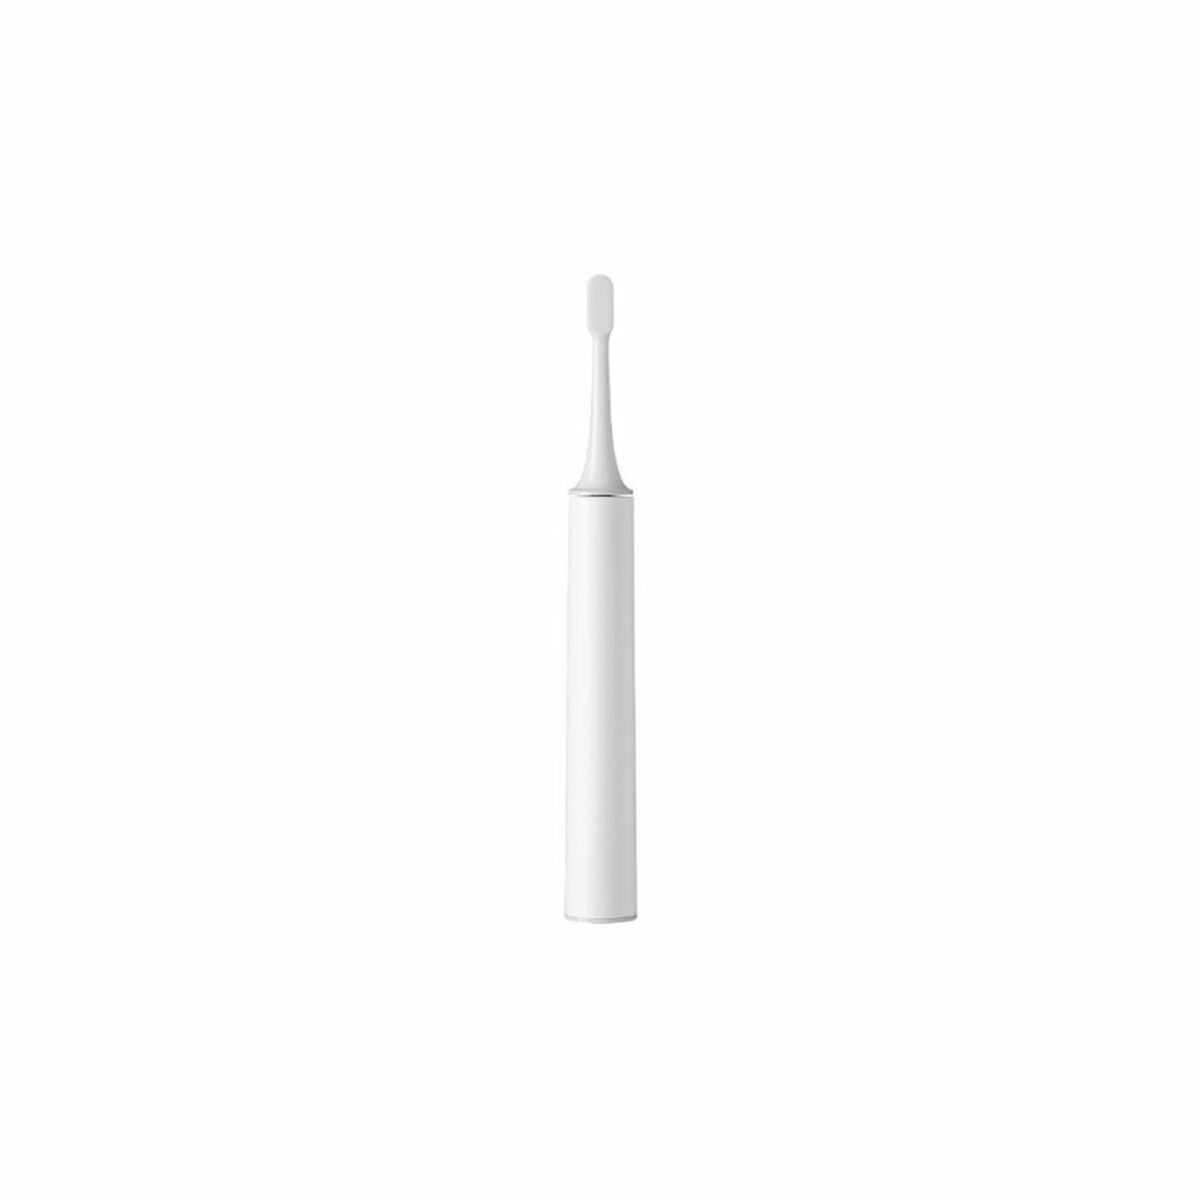 Electric Toothbrush Xiaomi Mijia T500